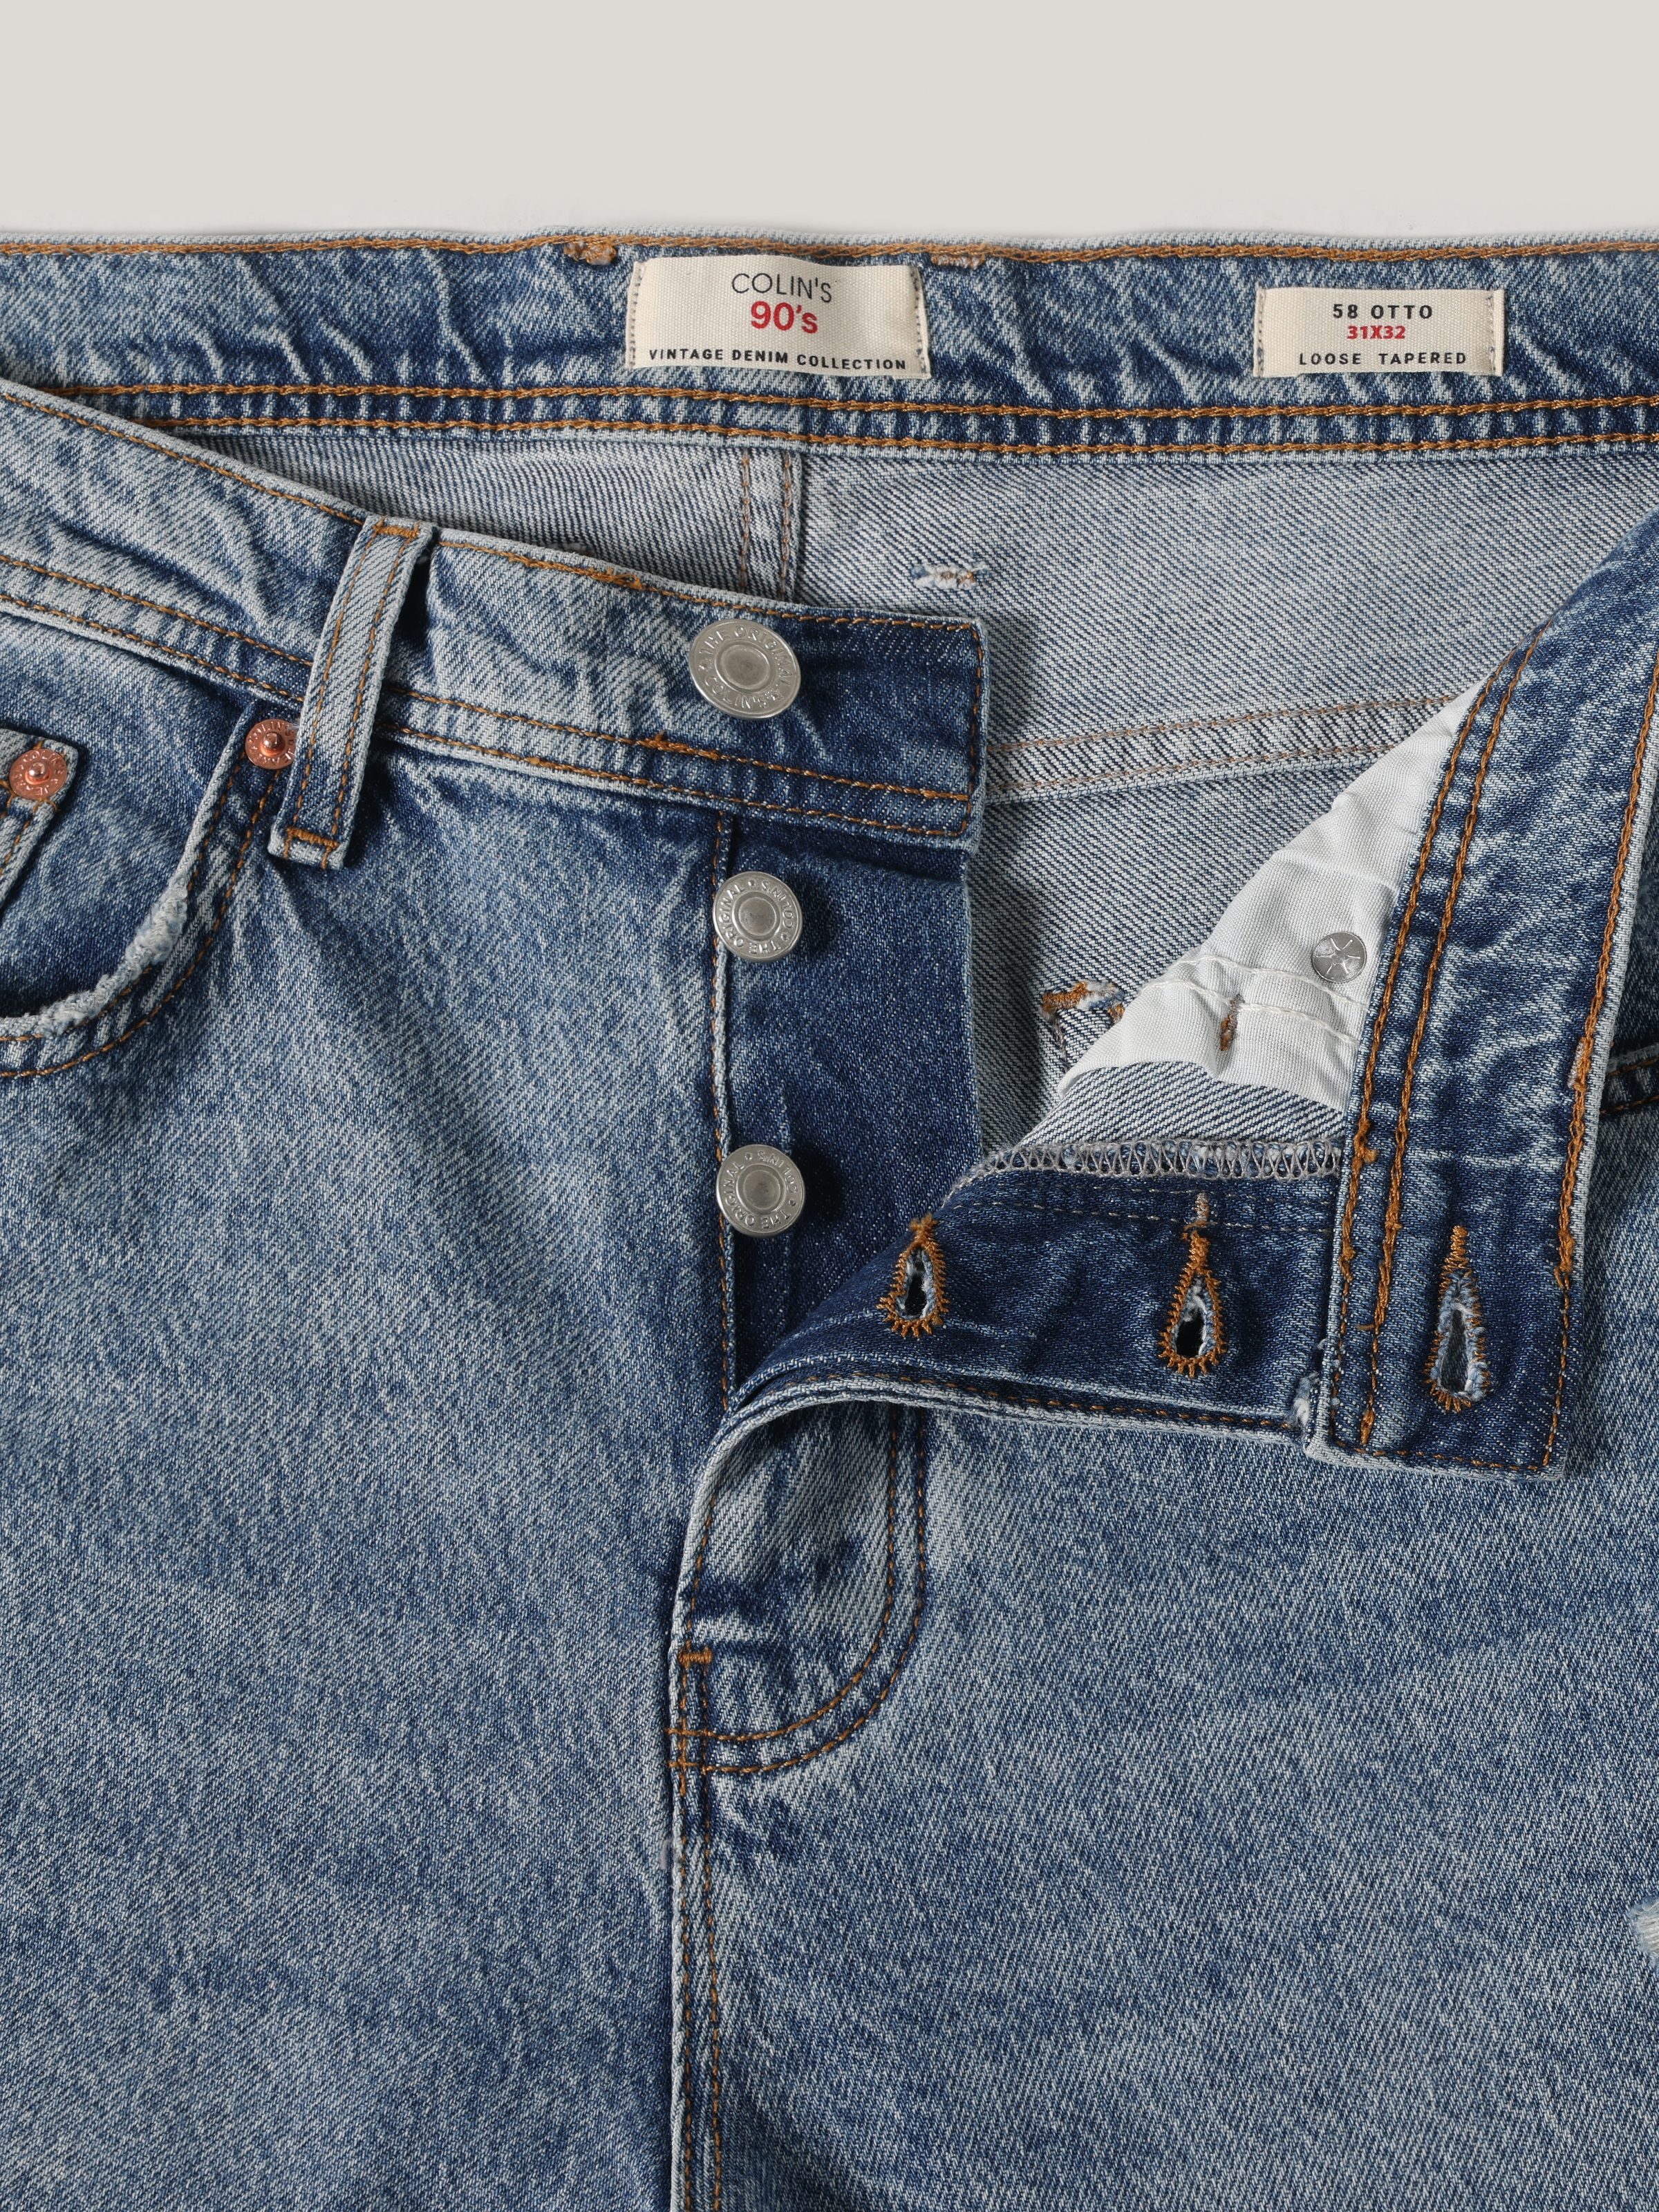 Afficher les détails de 058 Otto Loose Tapered Fit Pantalon En Jean Bleu Pour Homme